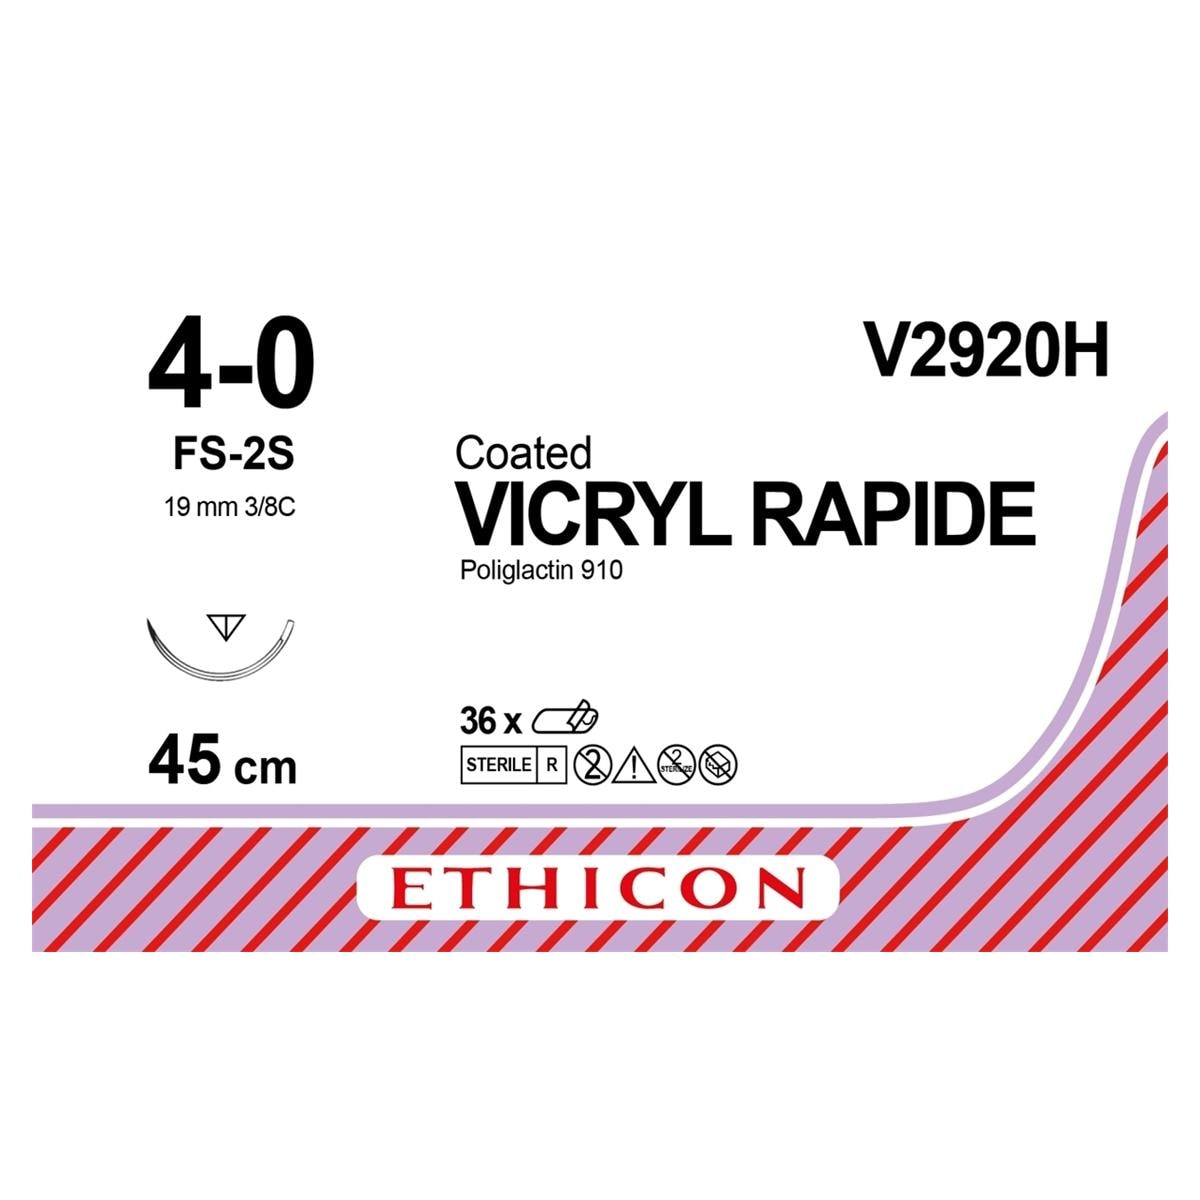 VICRYL rapide ungefärbt, geflochten - Nadeltyp FS2S - USP 4-0, Länge 0,45 m (V 2920 H), Packung 36 Stück